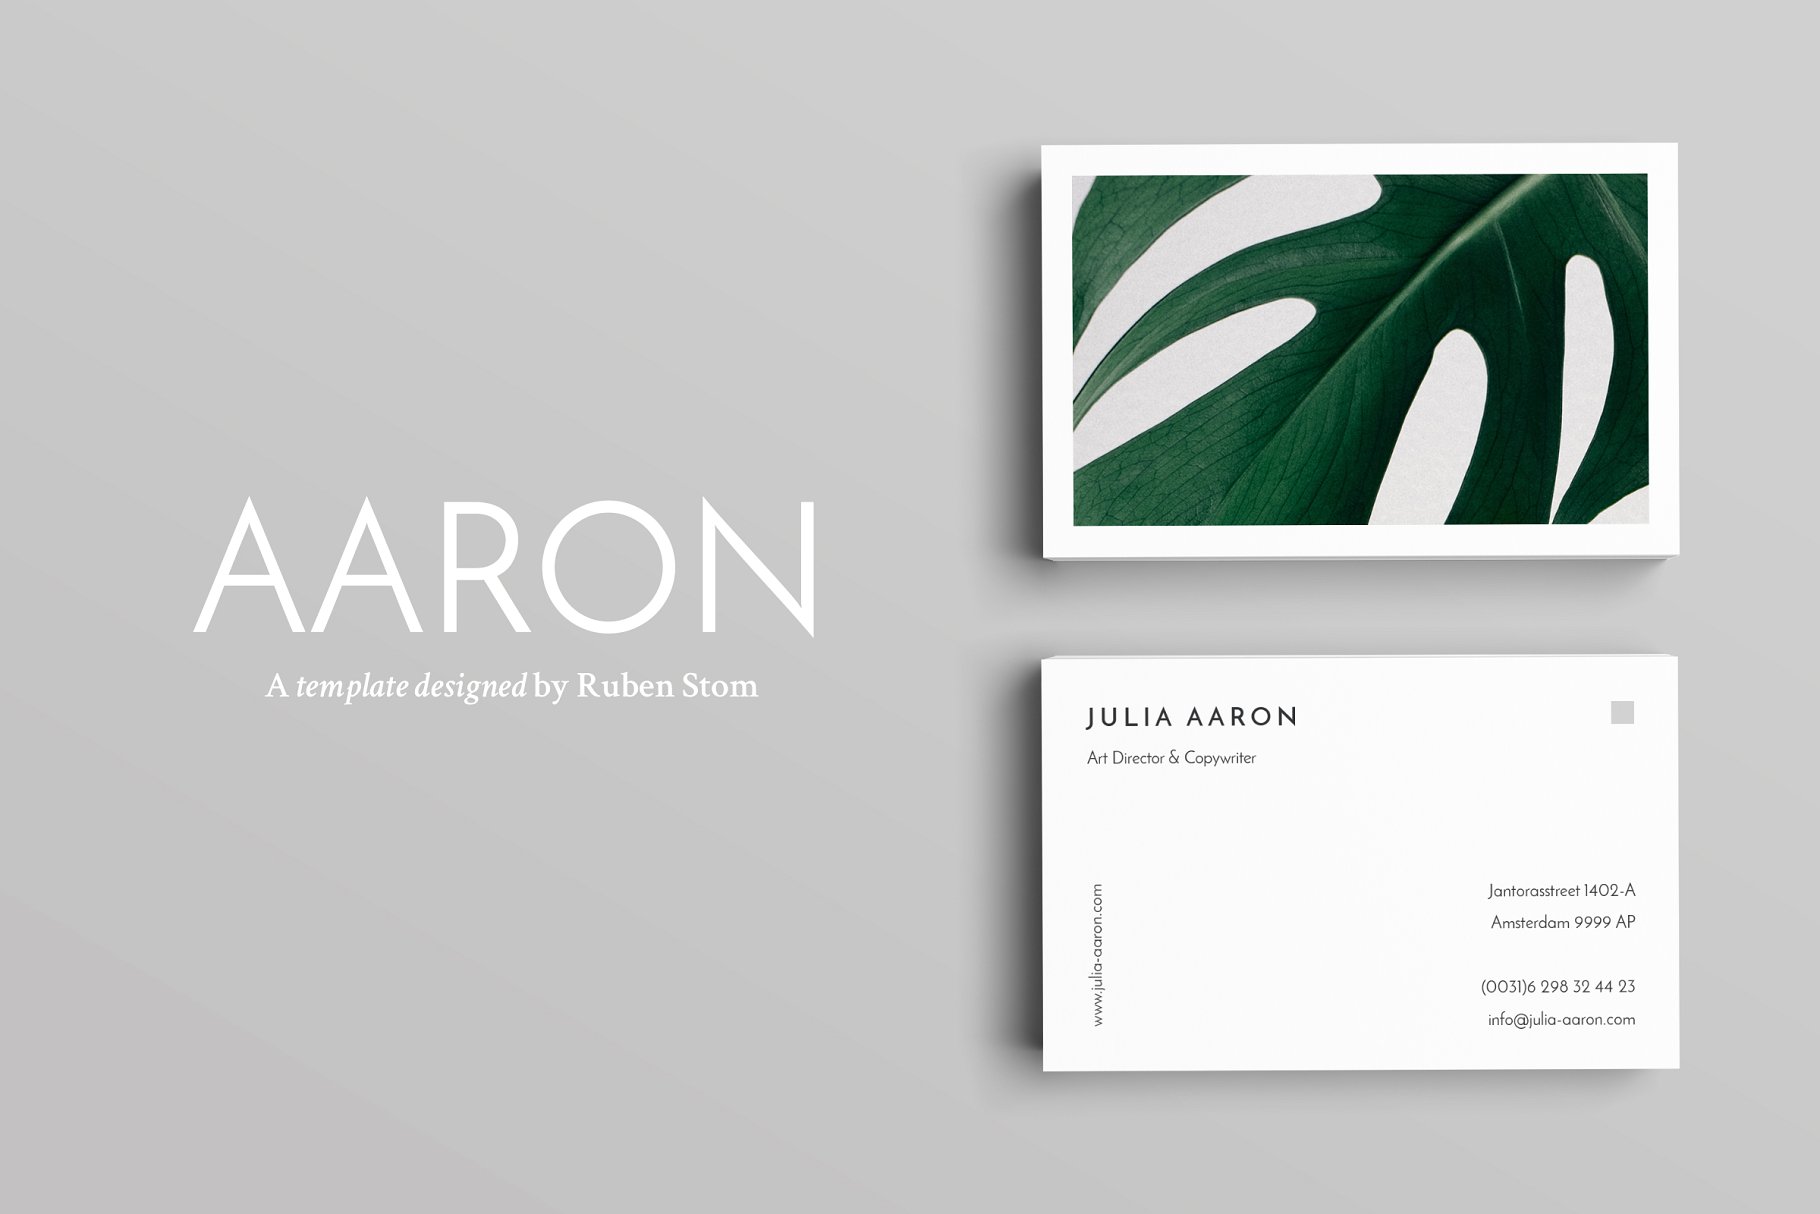 优雅简约风高端企业名片设计模板 Aaron Business Card Template插图